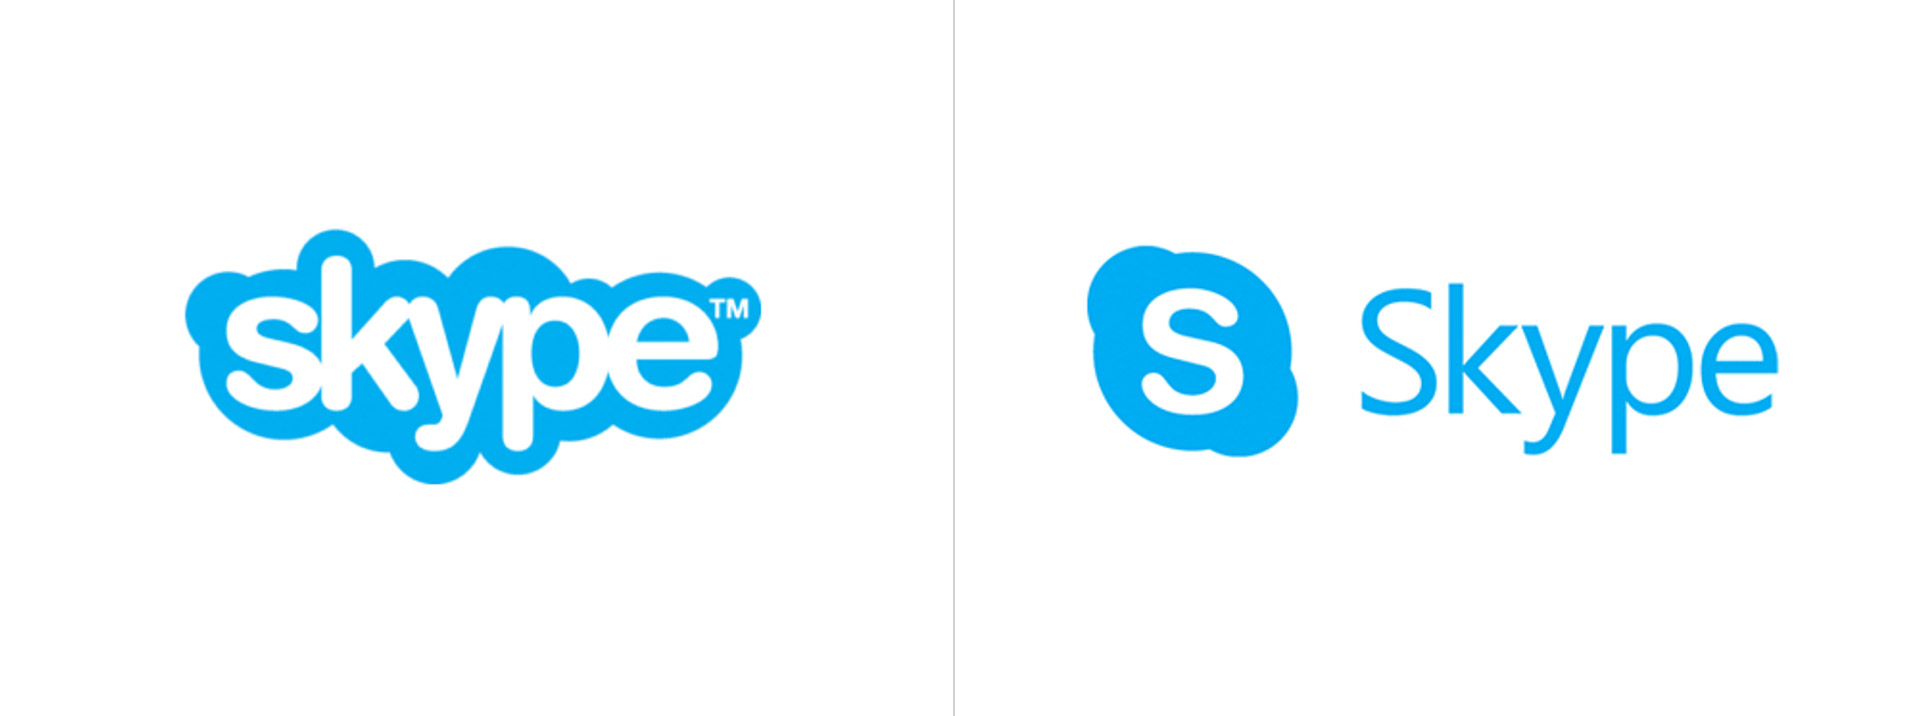 Logo Skype mới nhất: Logo Skype mới sẽ mang đến một cảm nhận mới về sự hiện đại và tiện lợi. Những thay đổi về hình dạng và cách sắp xếp màu sắc sẽ giúp chúng tôi trở nên nổi bật và phù hợp với nhu cầu người dùng. Hãy chào đón mới của Skype với sự cập nhật logo mới nhất!